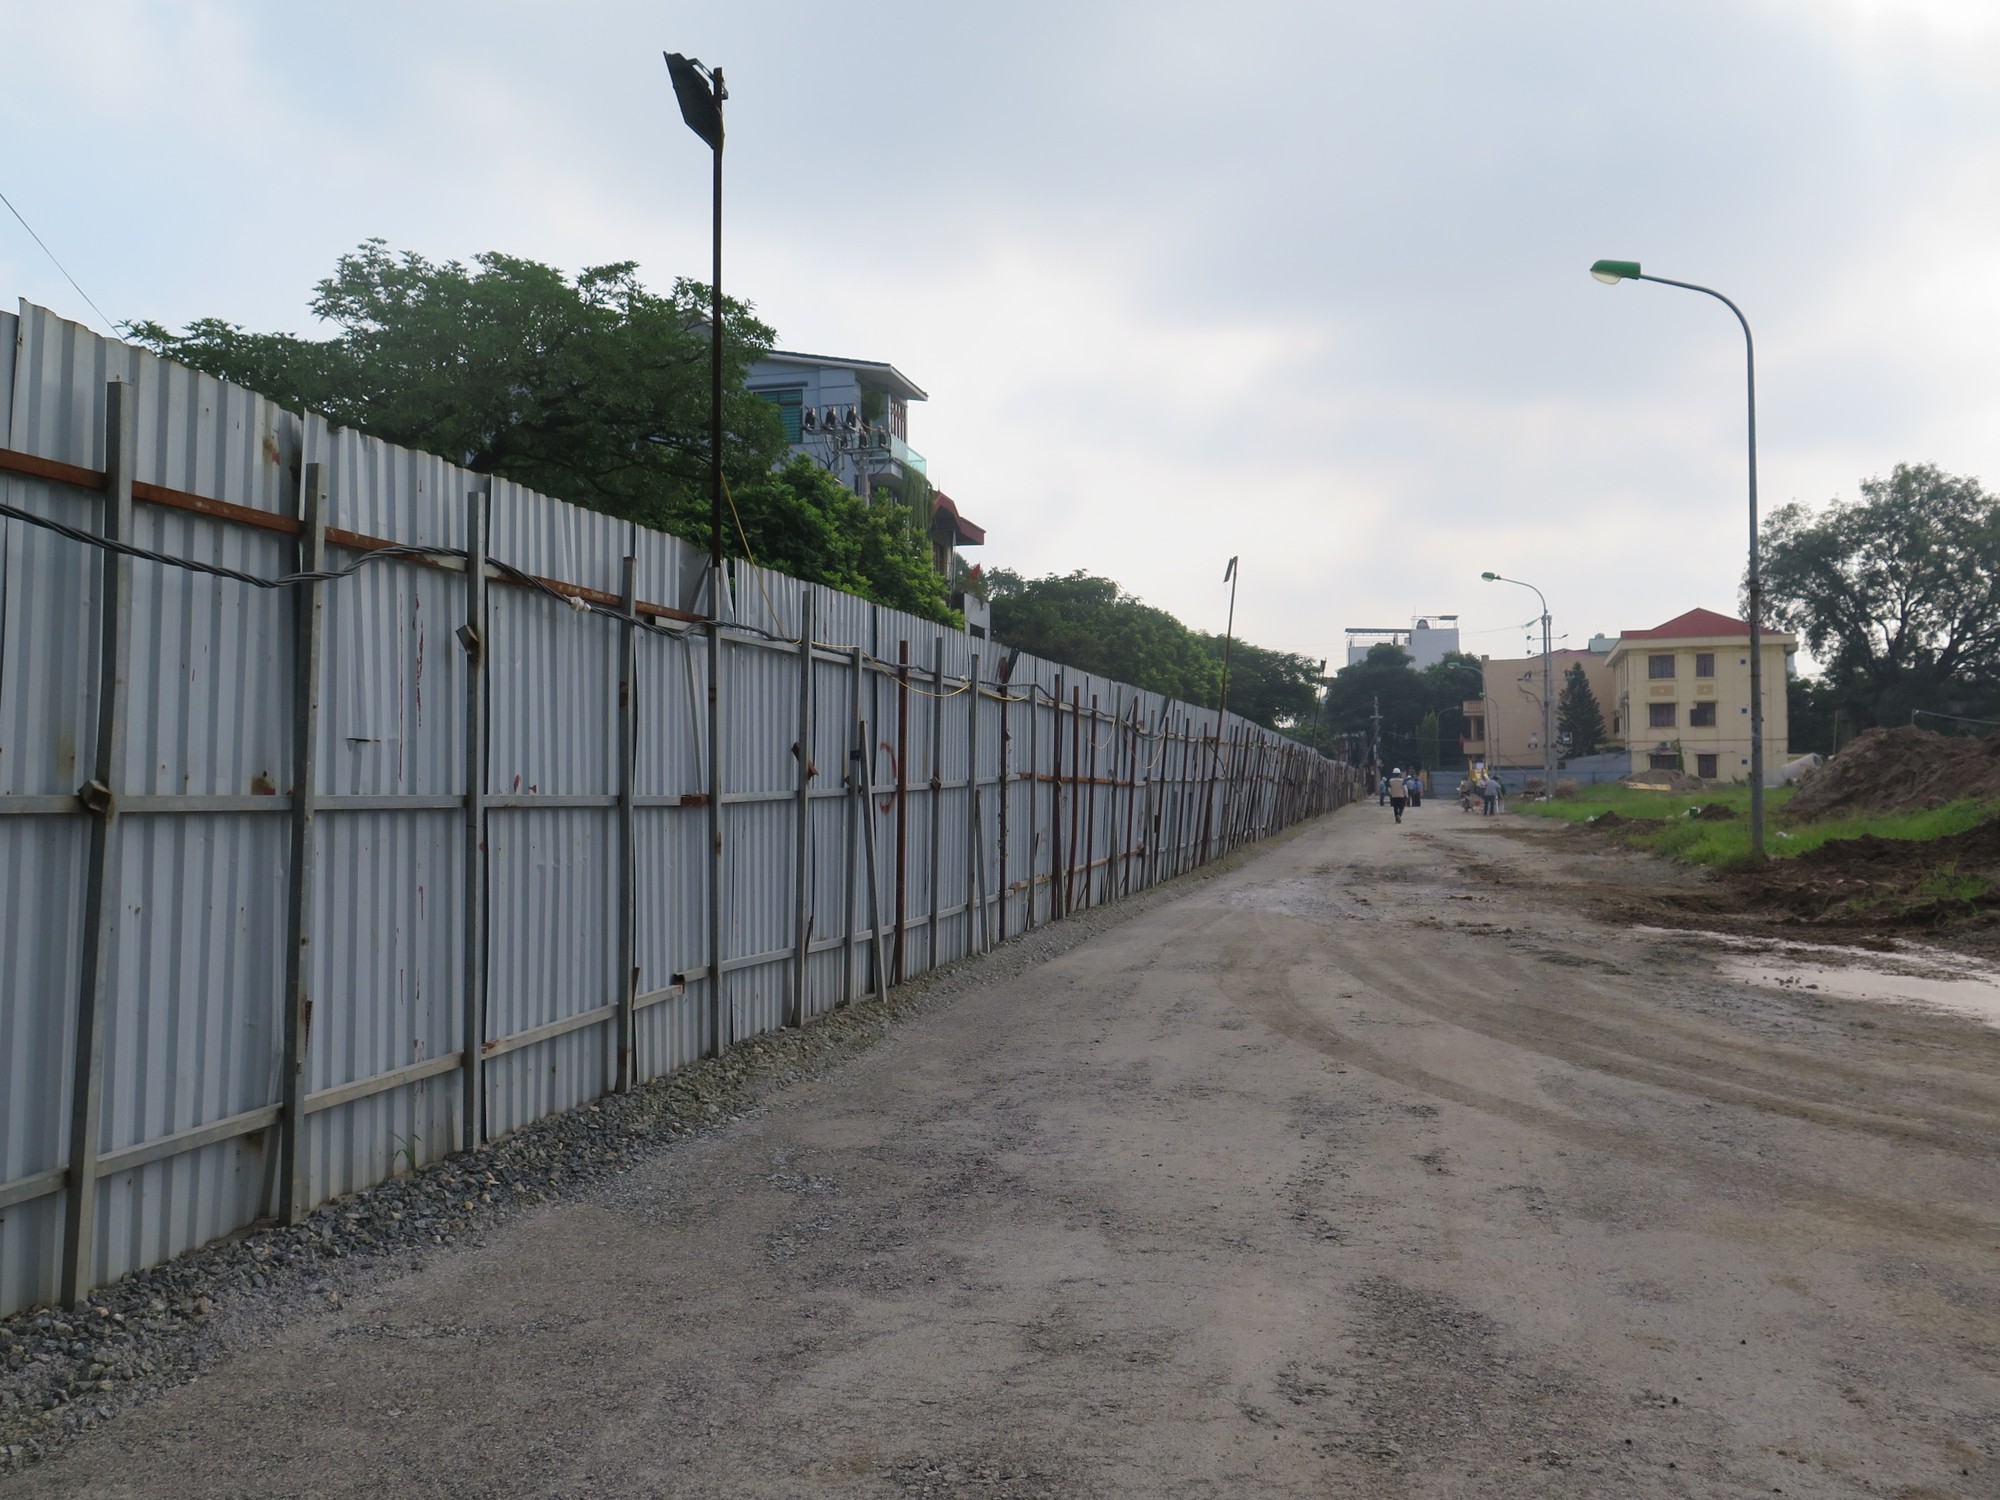 Tiếp bài Dự án khu đô thị xâm lấn đường ở Hà Nội: Công ty CP Him Lam thi công sai giấy phép - Ảnh 3.